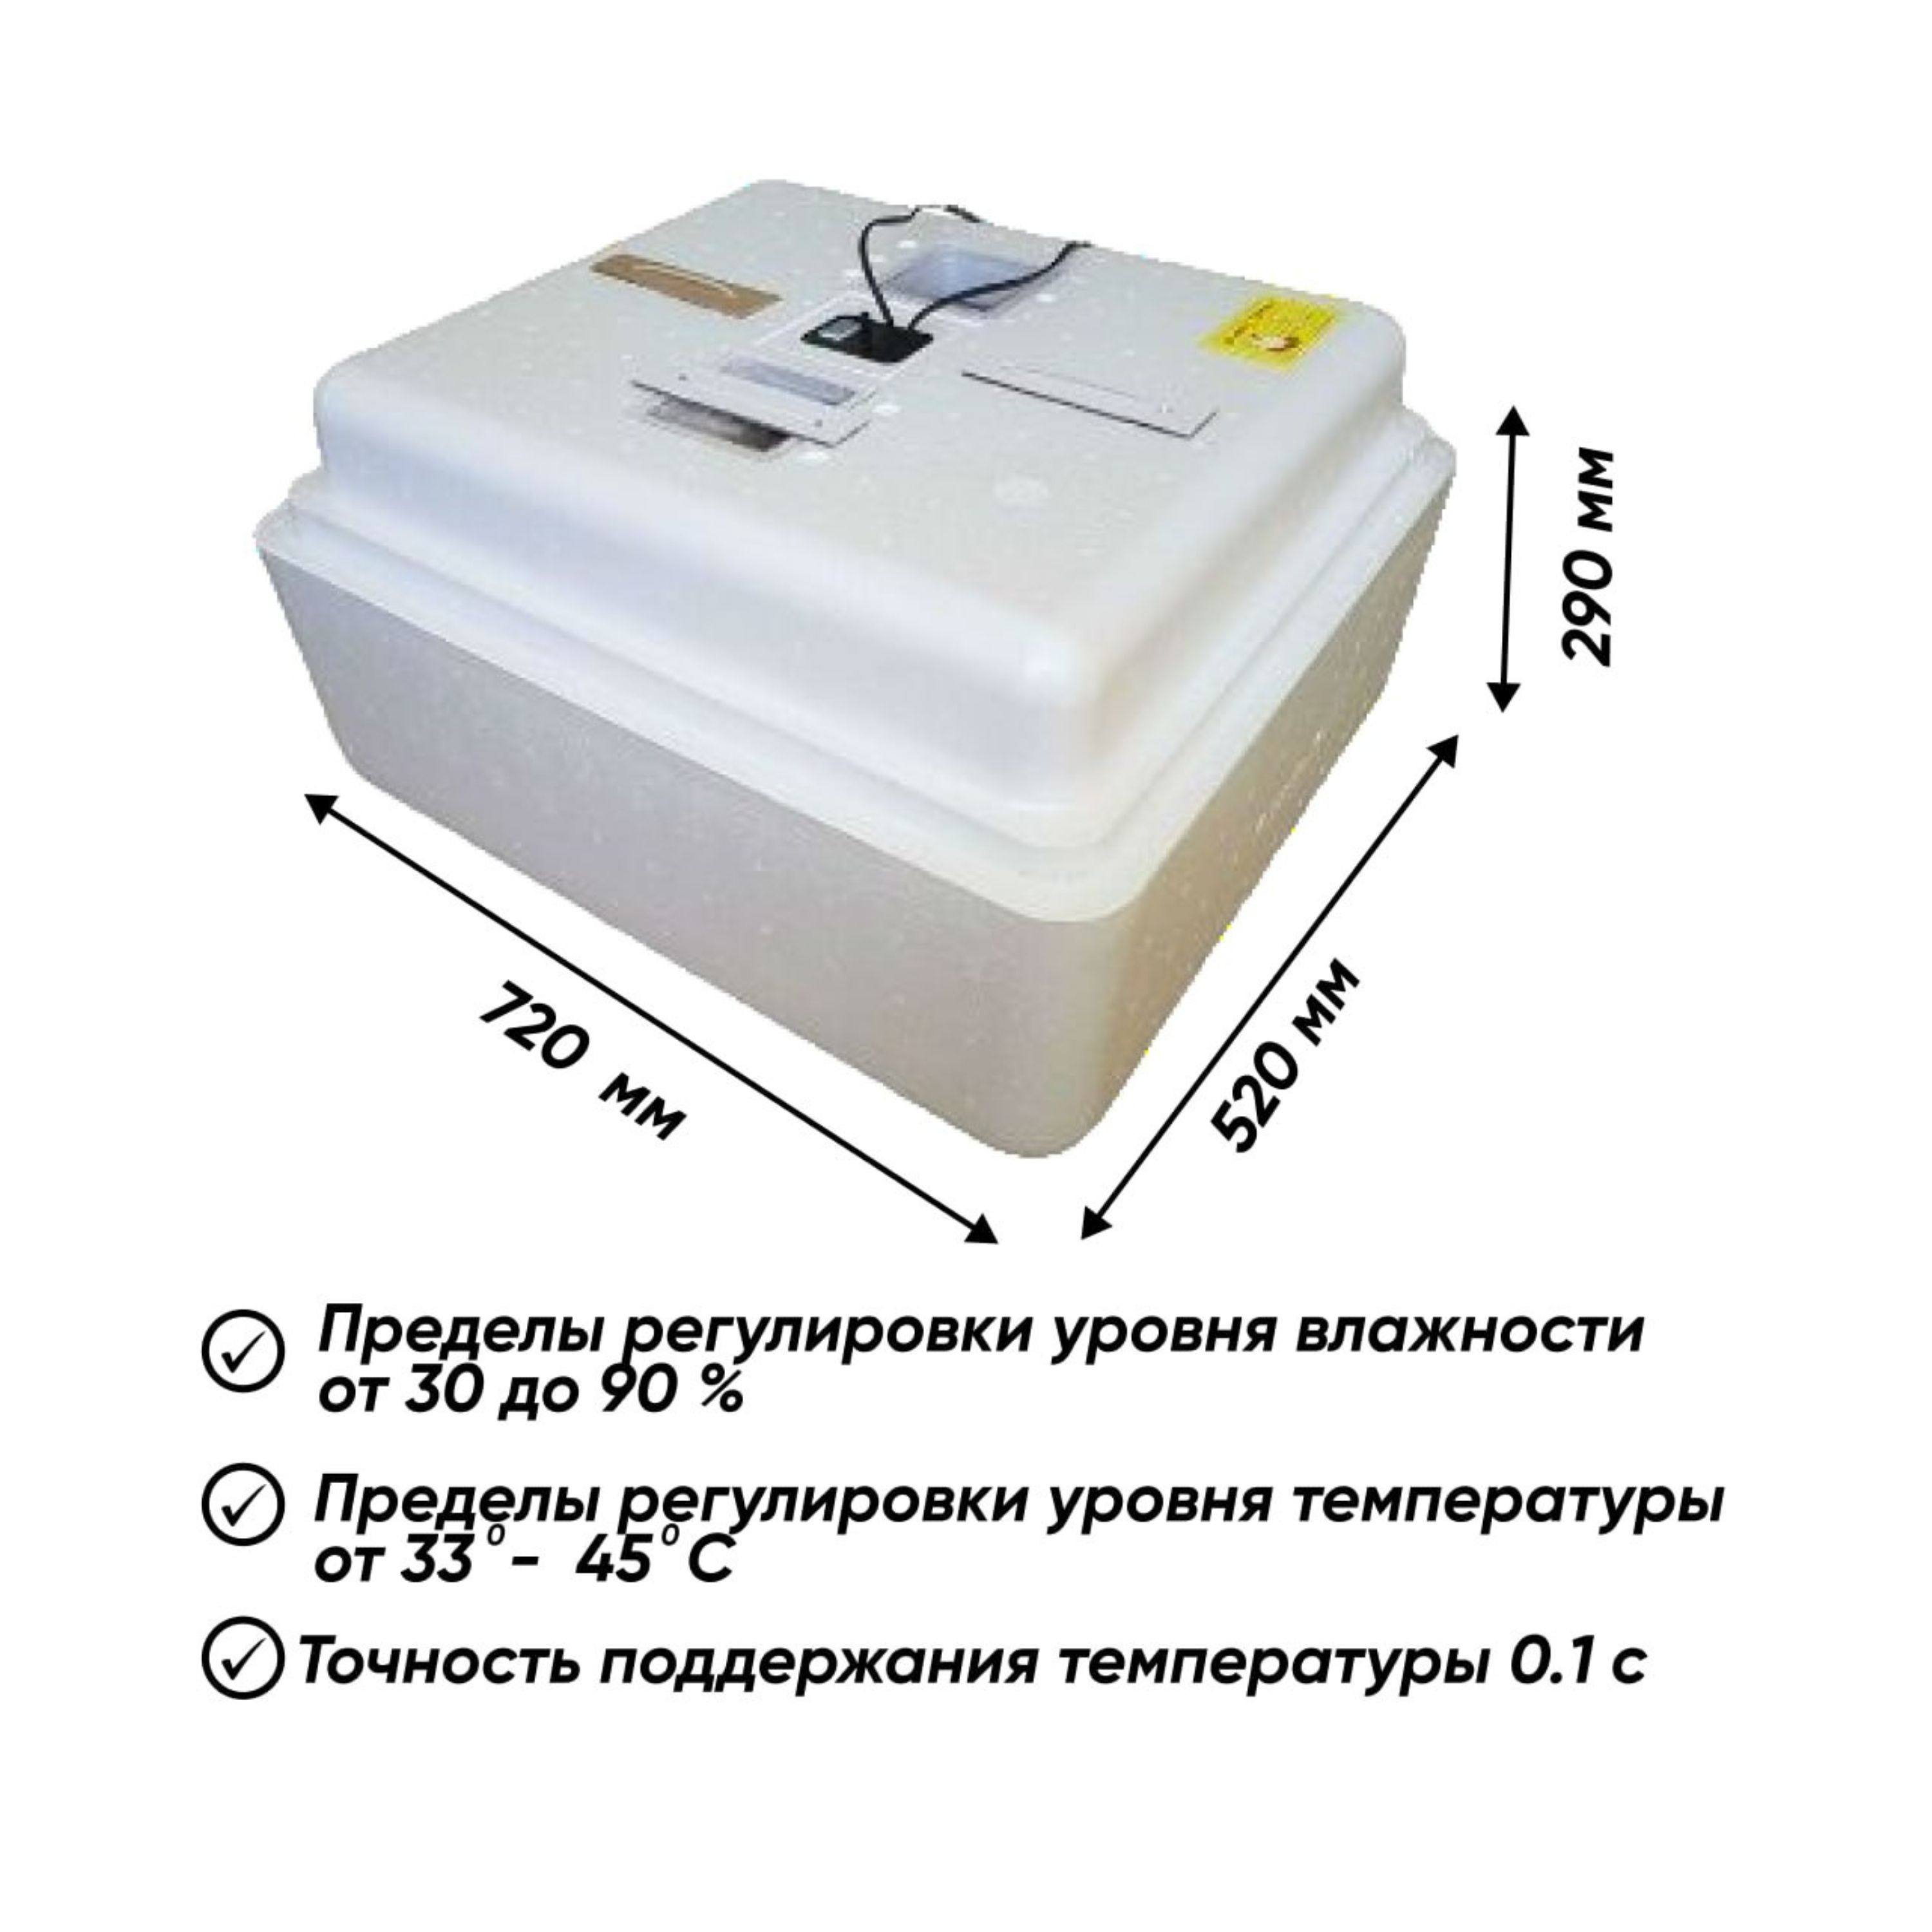 Инкубатор для яиц Несушка автоматический, на 77 яиц, 220В